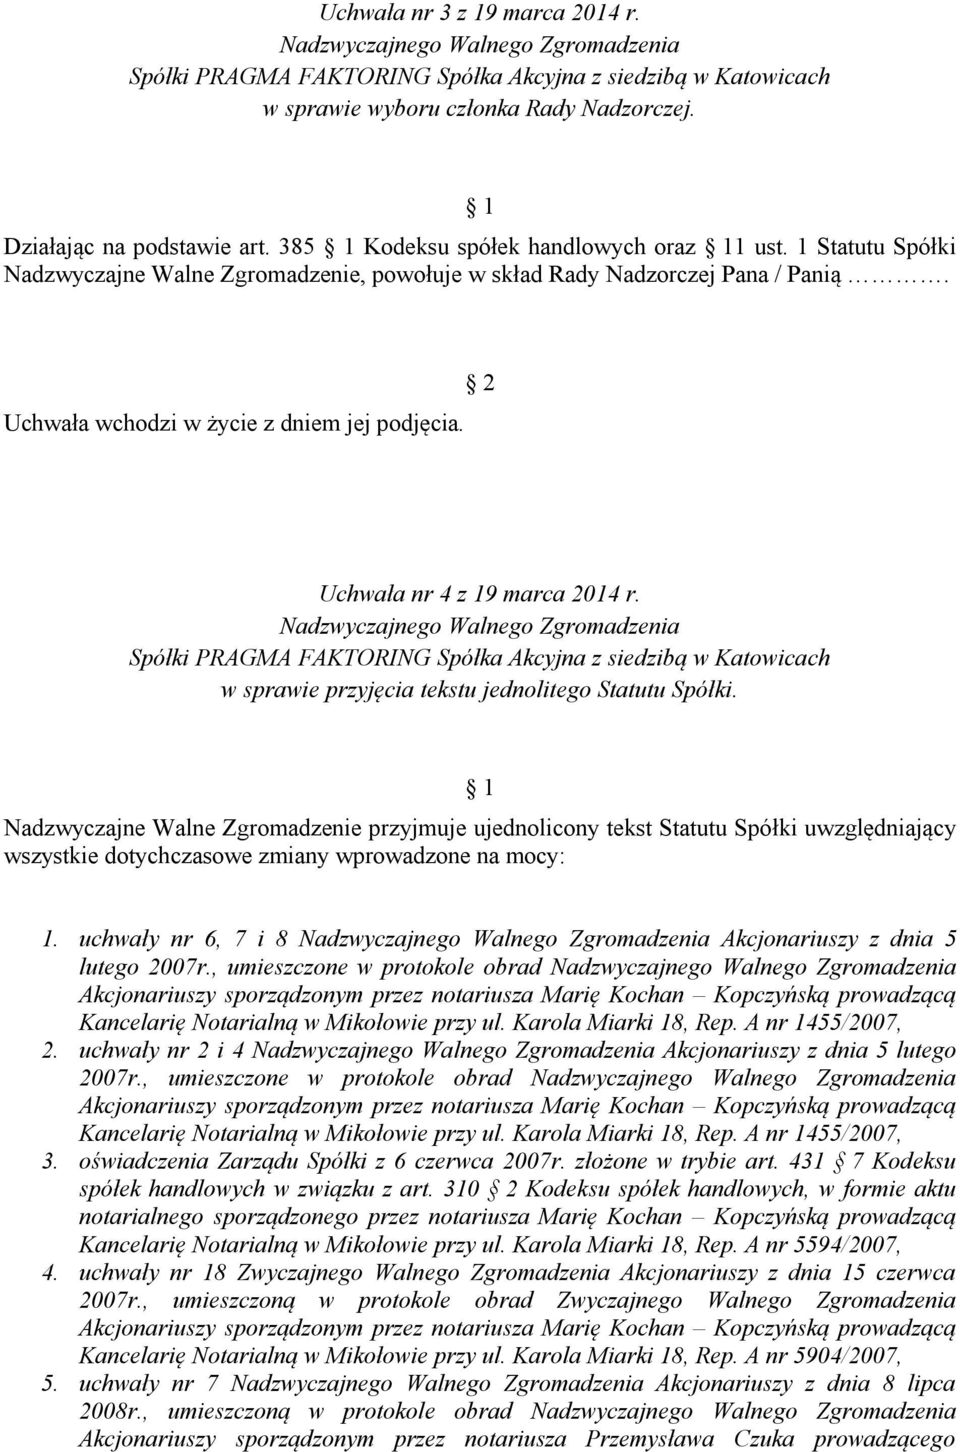 Uchwała nr 4 z 19 marca 2014 r. Nadzwyczajnego Walnego Zgromadzenia Spółki PRAGMA FAKTORING Spółka Akcyjna z siedzibą w Katowicach w sprawie przyjęcia tekstu jednolitego Statutu Spółki.